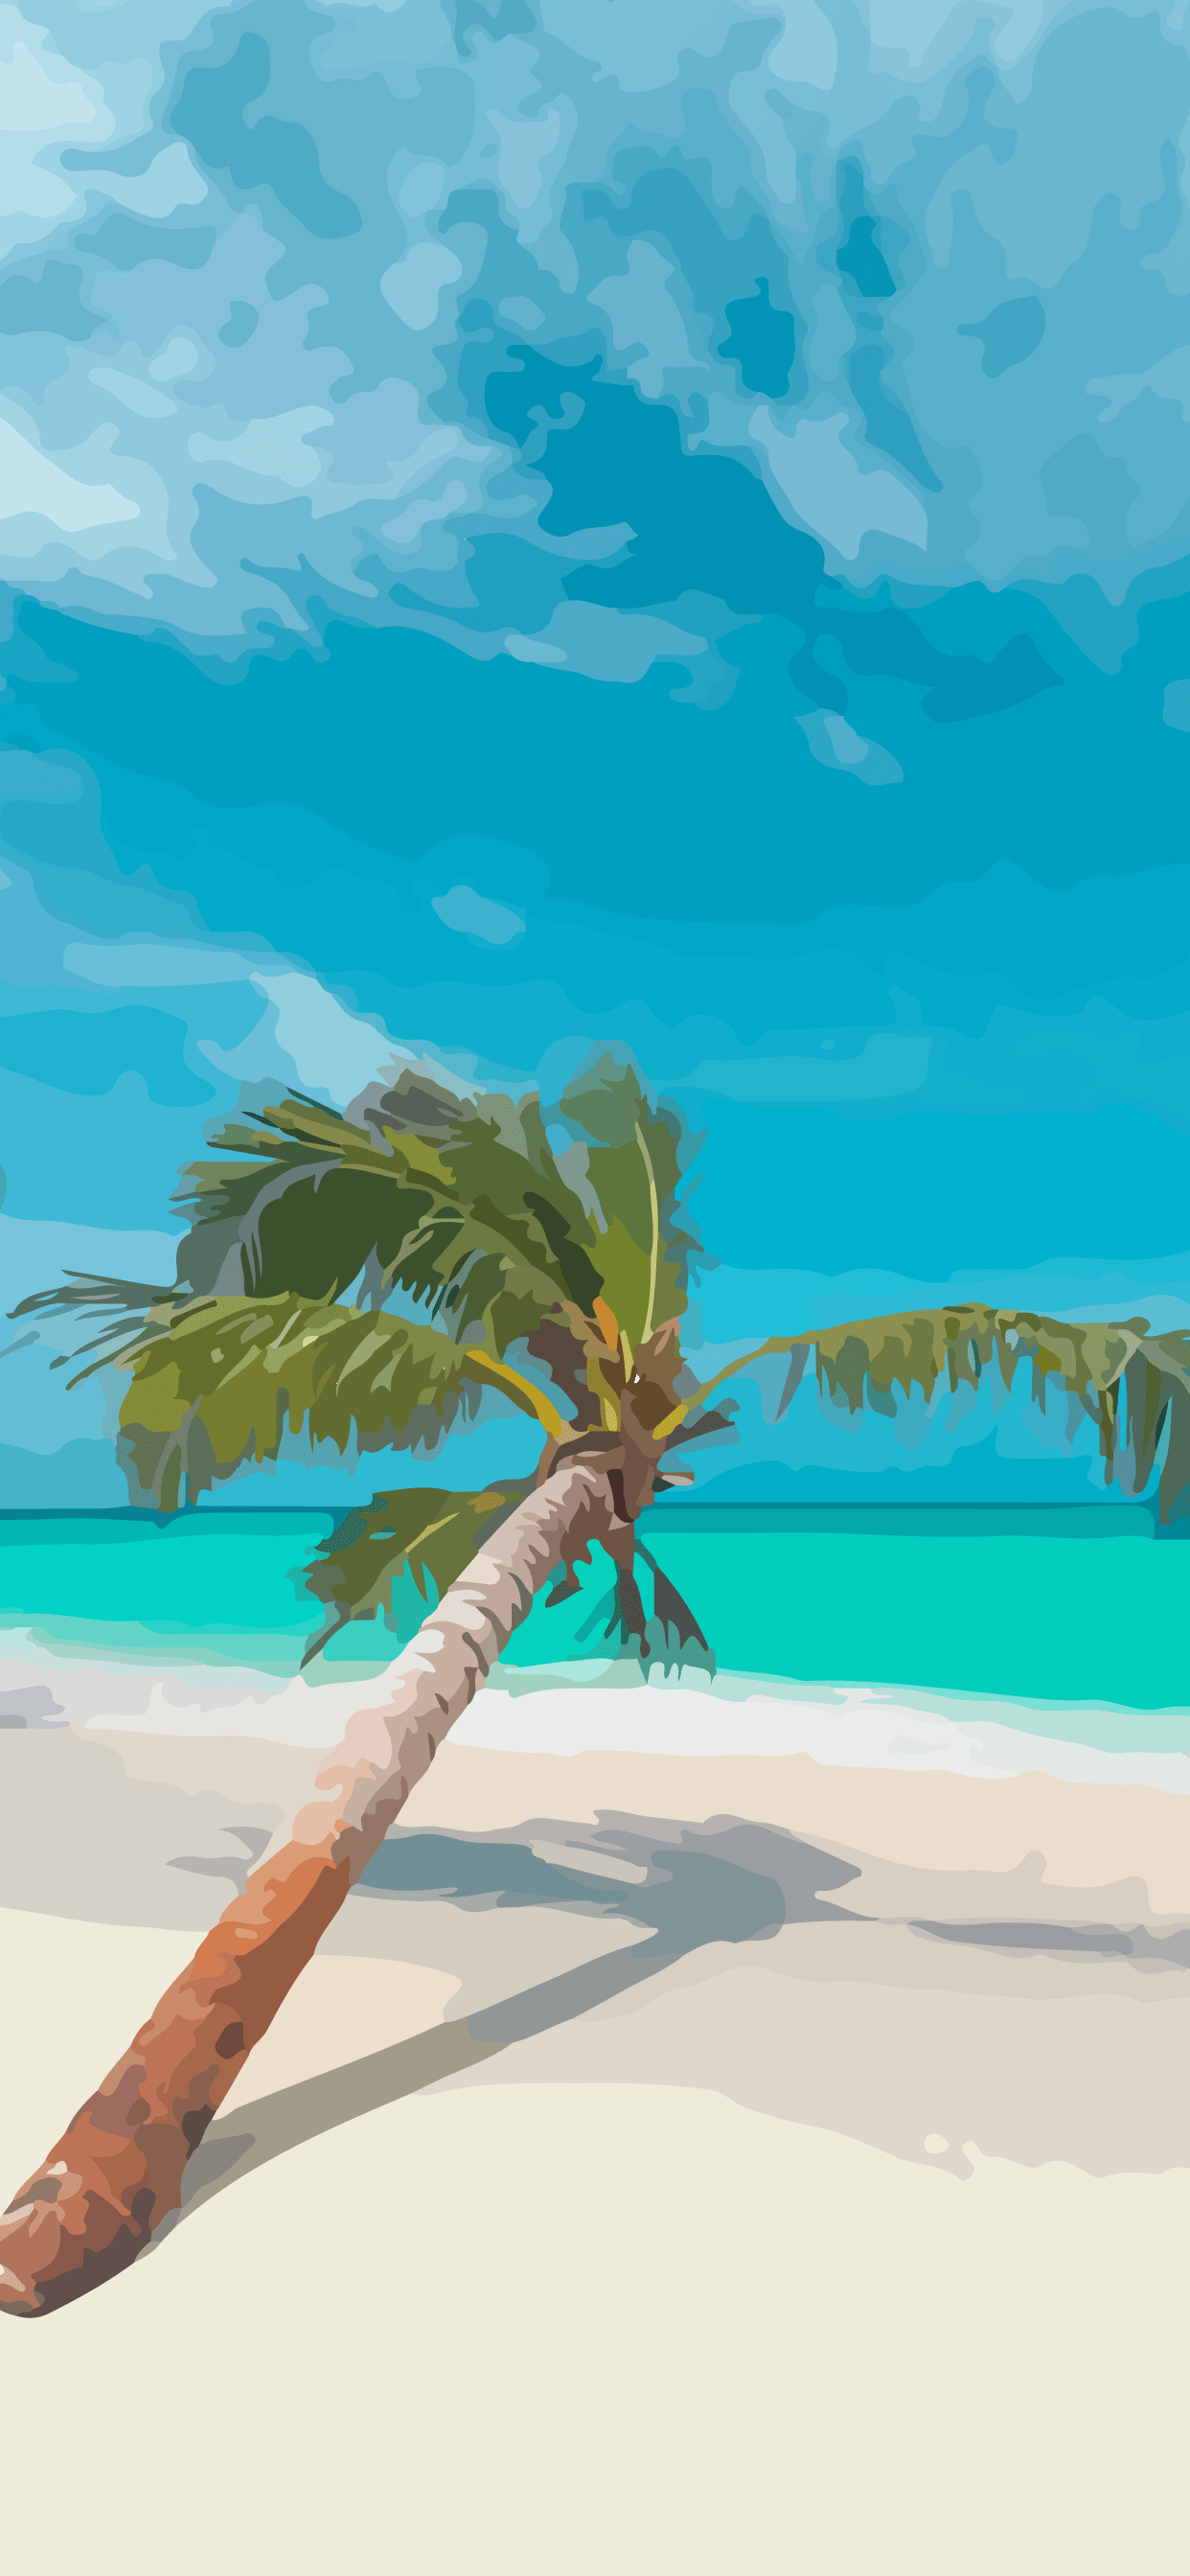 A palm tree on the beach - Beach